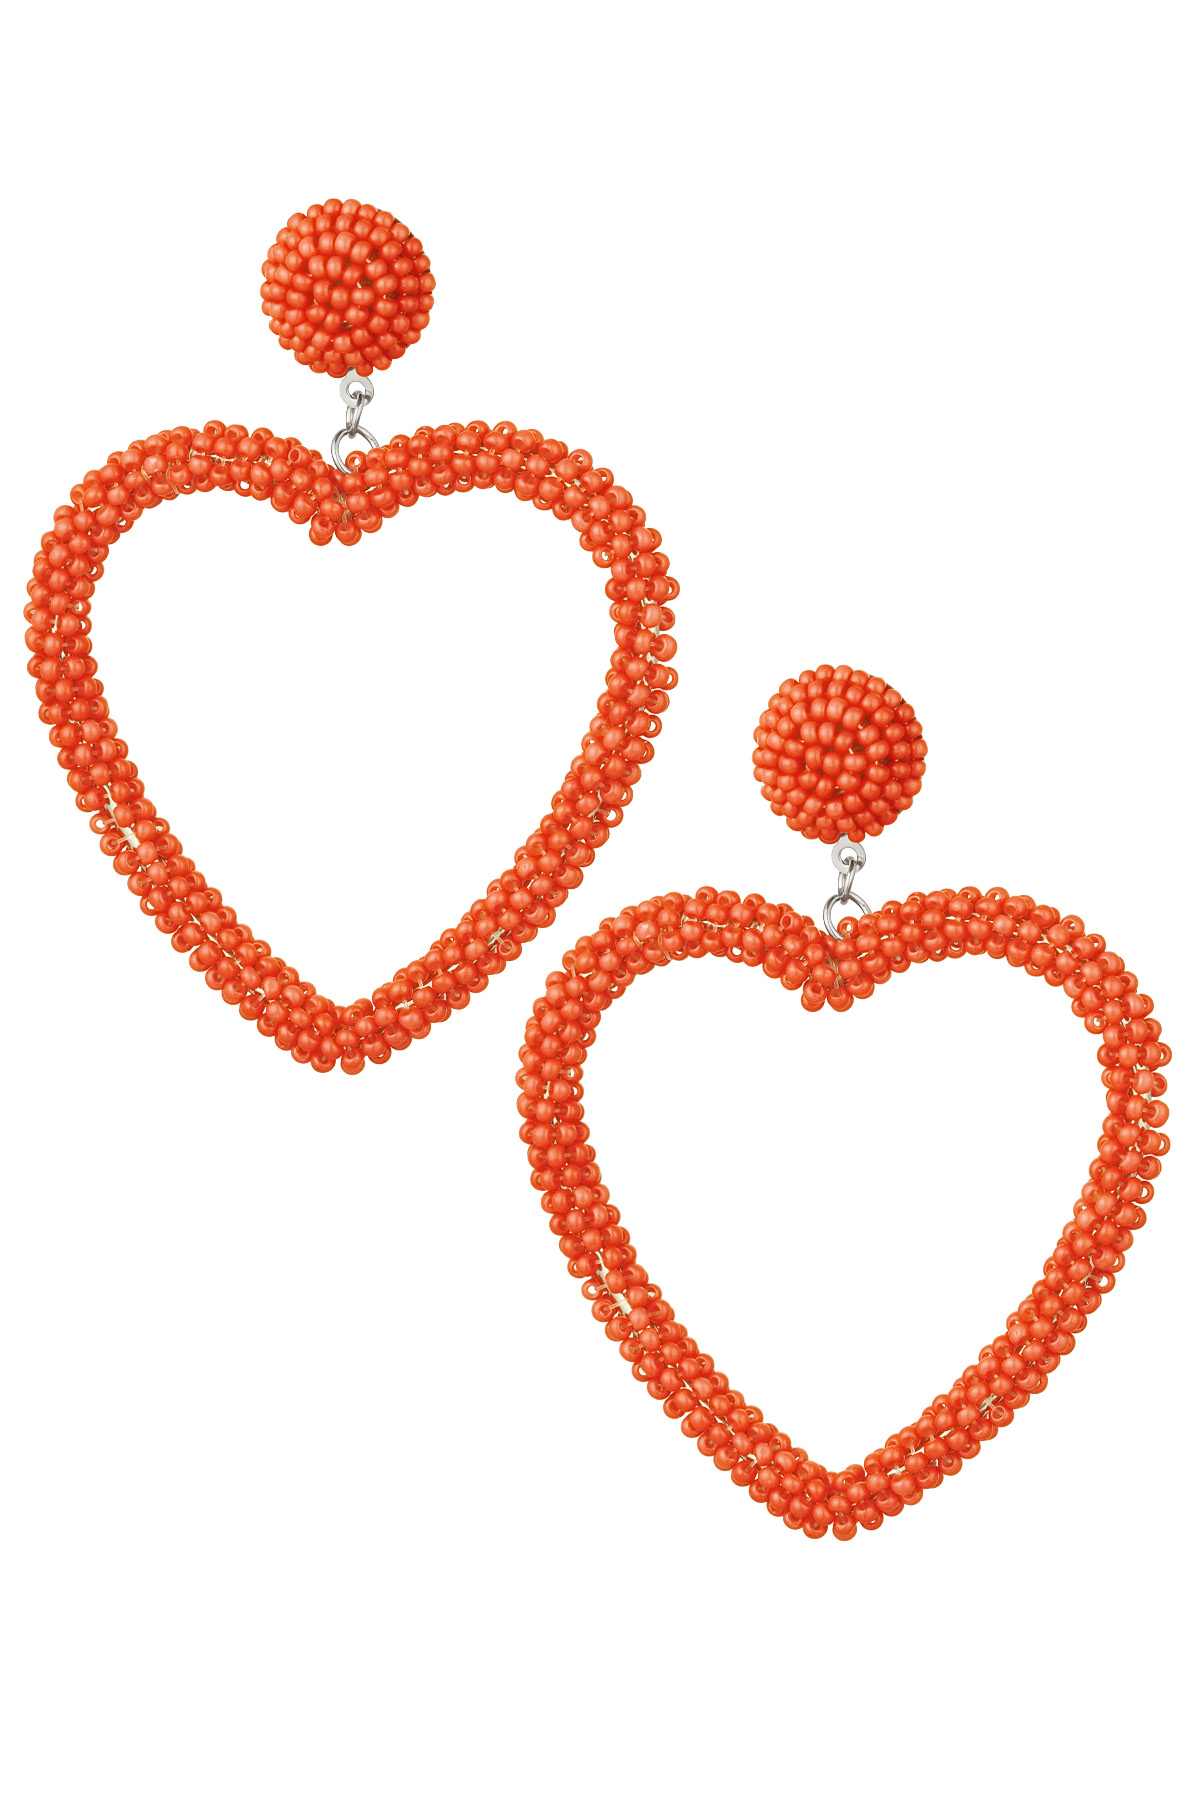 Boucles d'Oreilles Perles Bonbons - Orange Acier Inoxydable